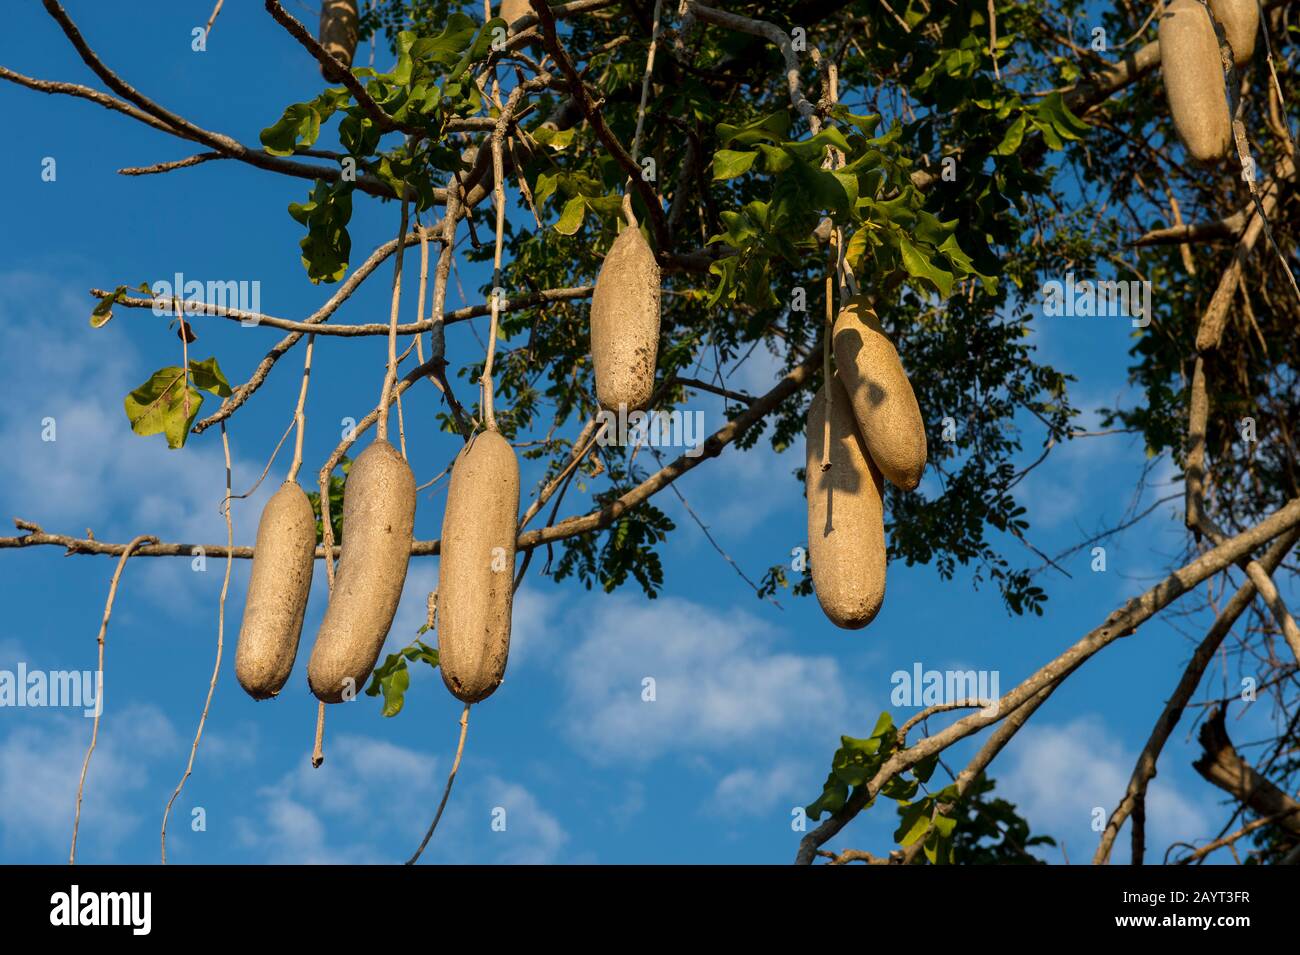 Albero di salsiccia (Kigelia) con frutta nel Parco Nazionale di Liwonde, Malawi. Foto Stock